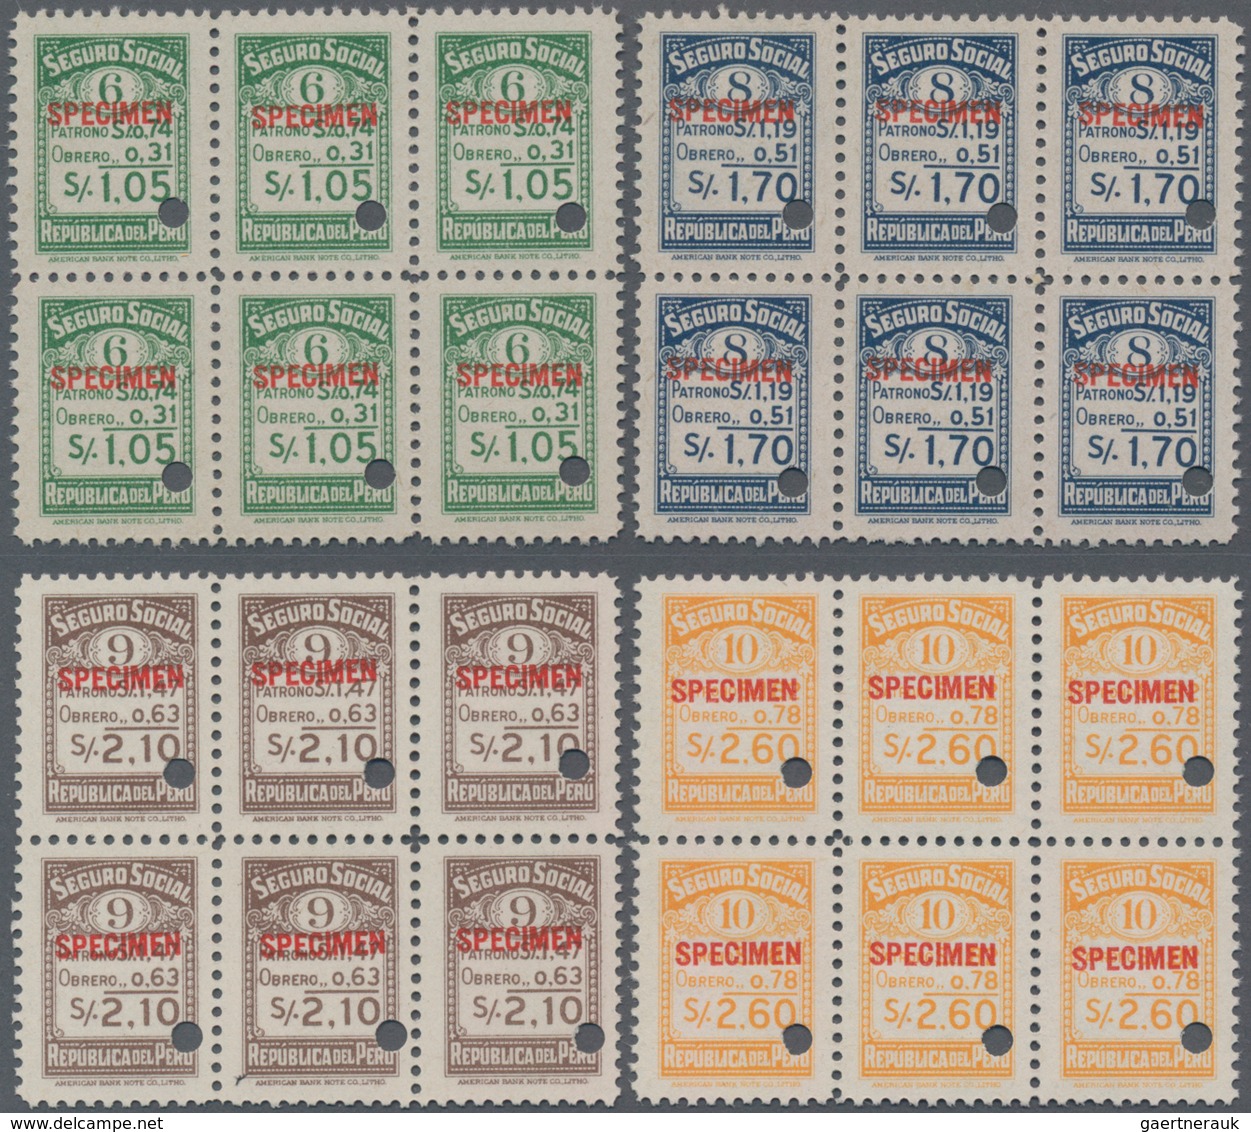 Peru: 1945 (ca.), Four Revenue Stamps 'SEGURO SOCIAL' (social Insurance) 1.05s. Green, 1.70s. Blue. - Peru